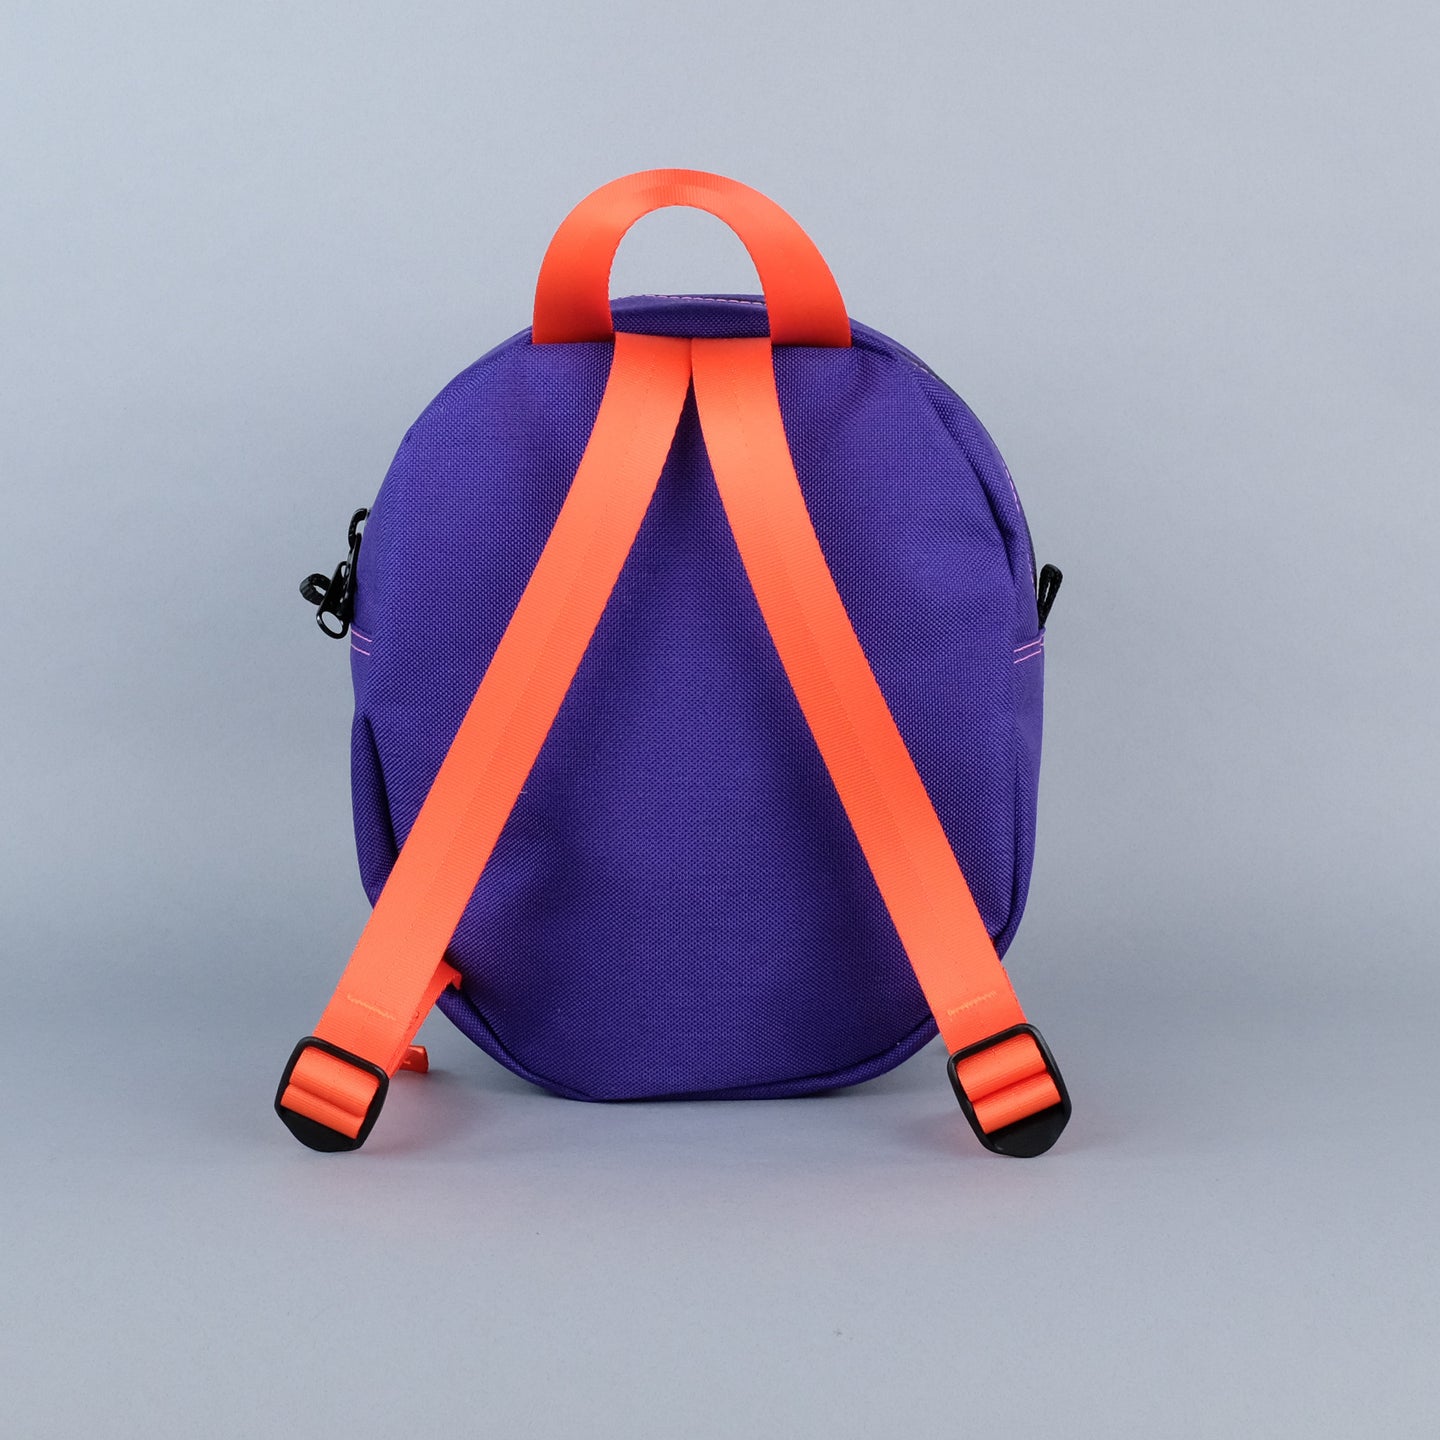 Sidekick Backpack